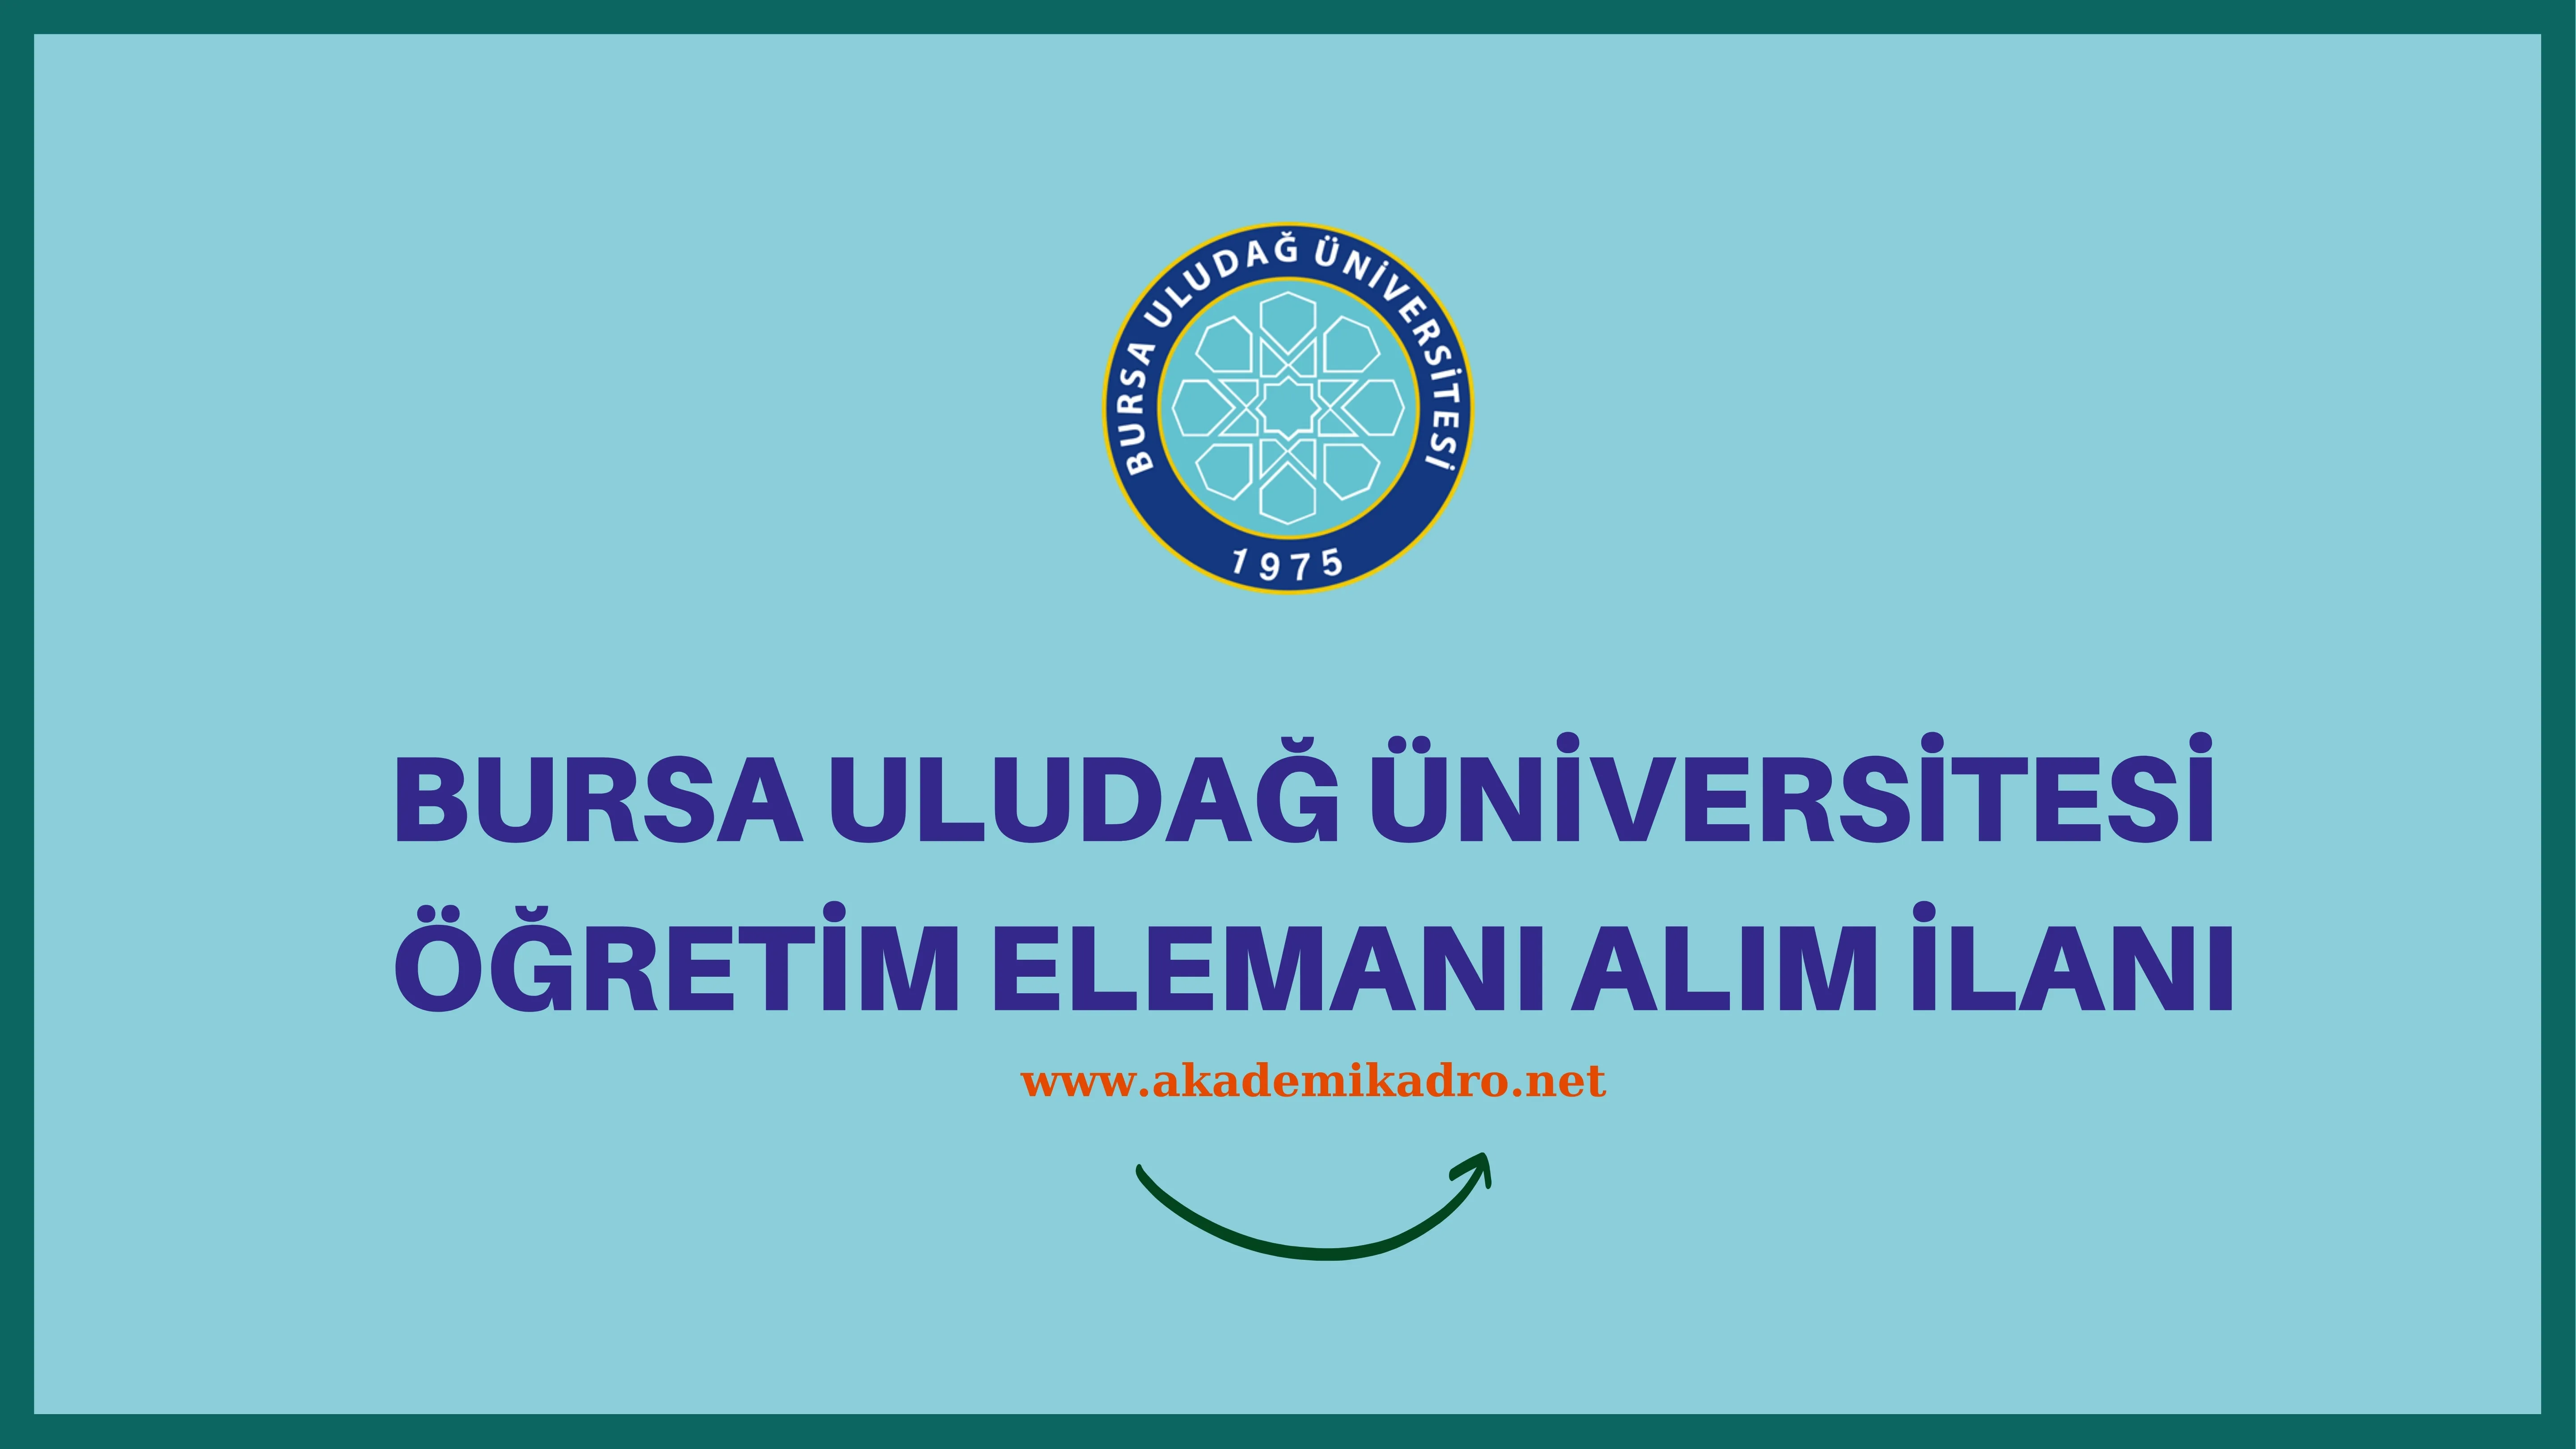 Bursa Uludağ Üniversitesi 13 Öğretim görevlisi ve 24 Öğretim üyesi alacak.